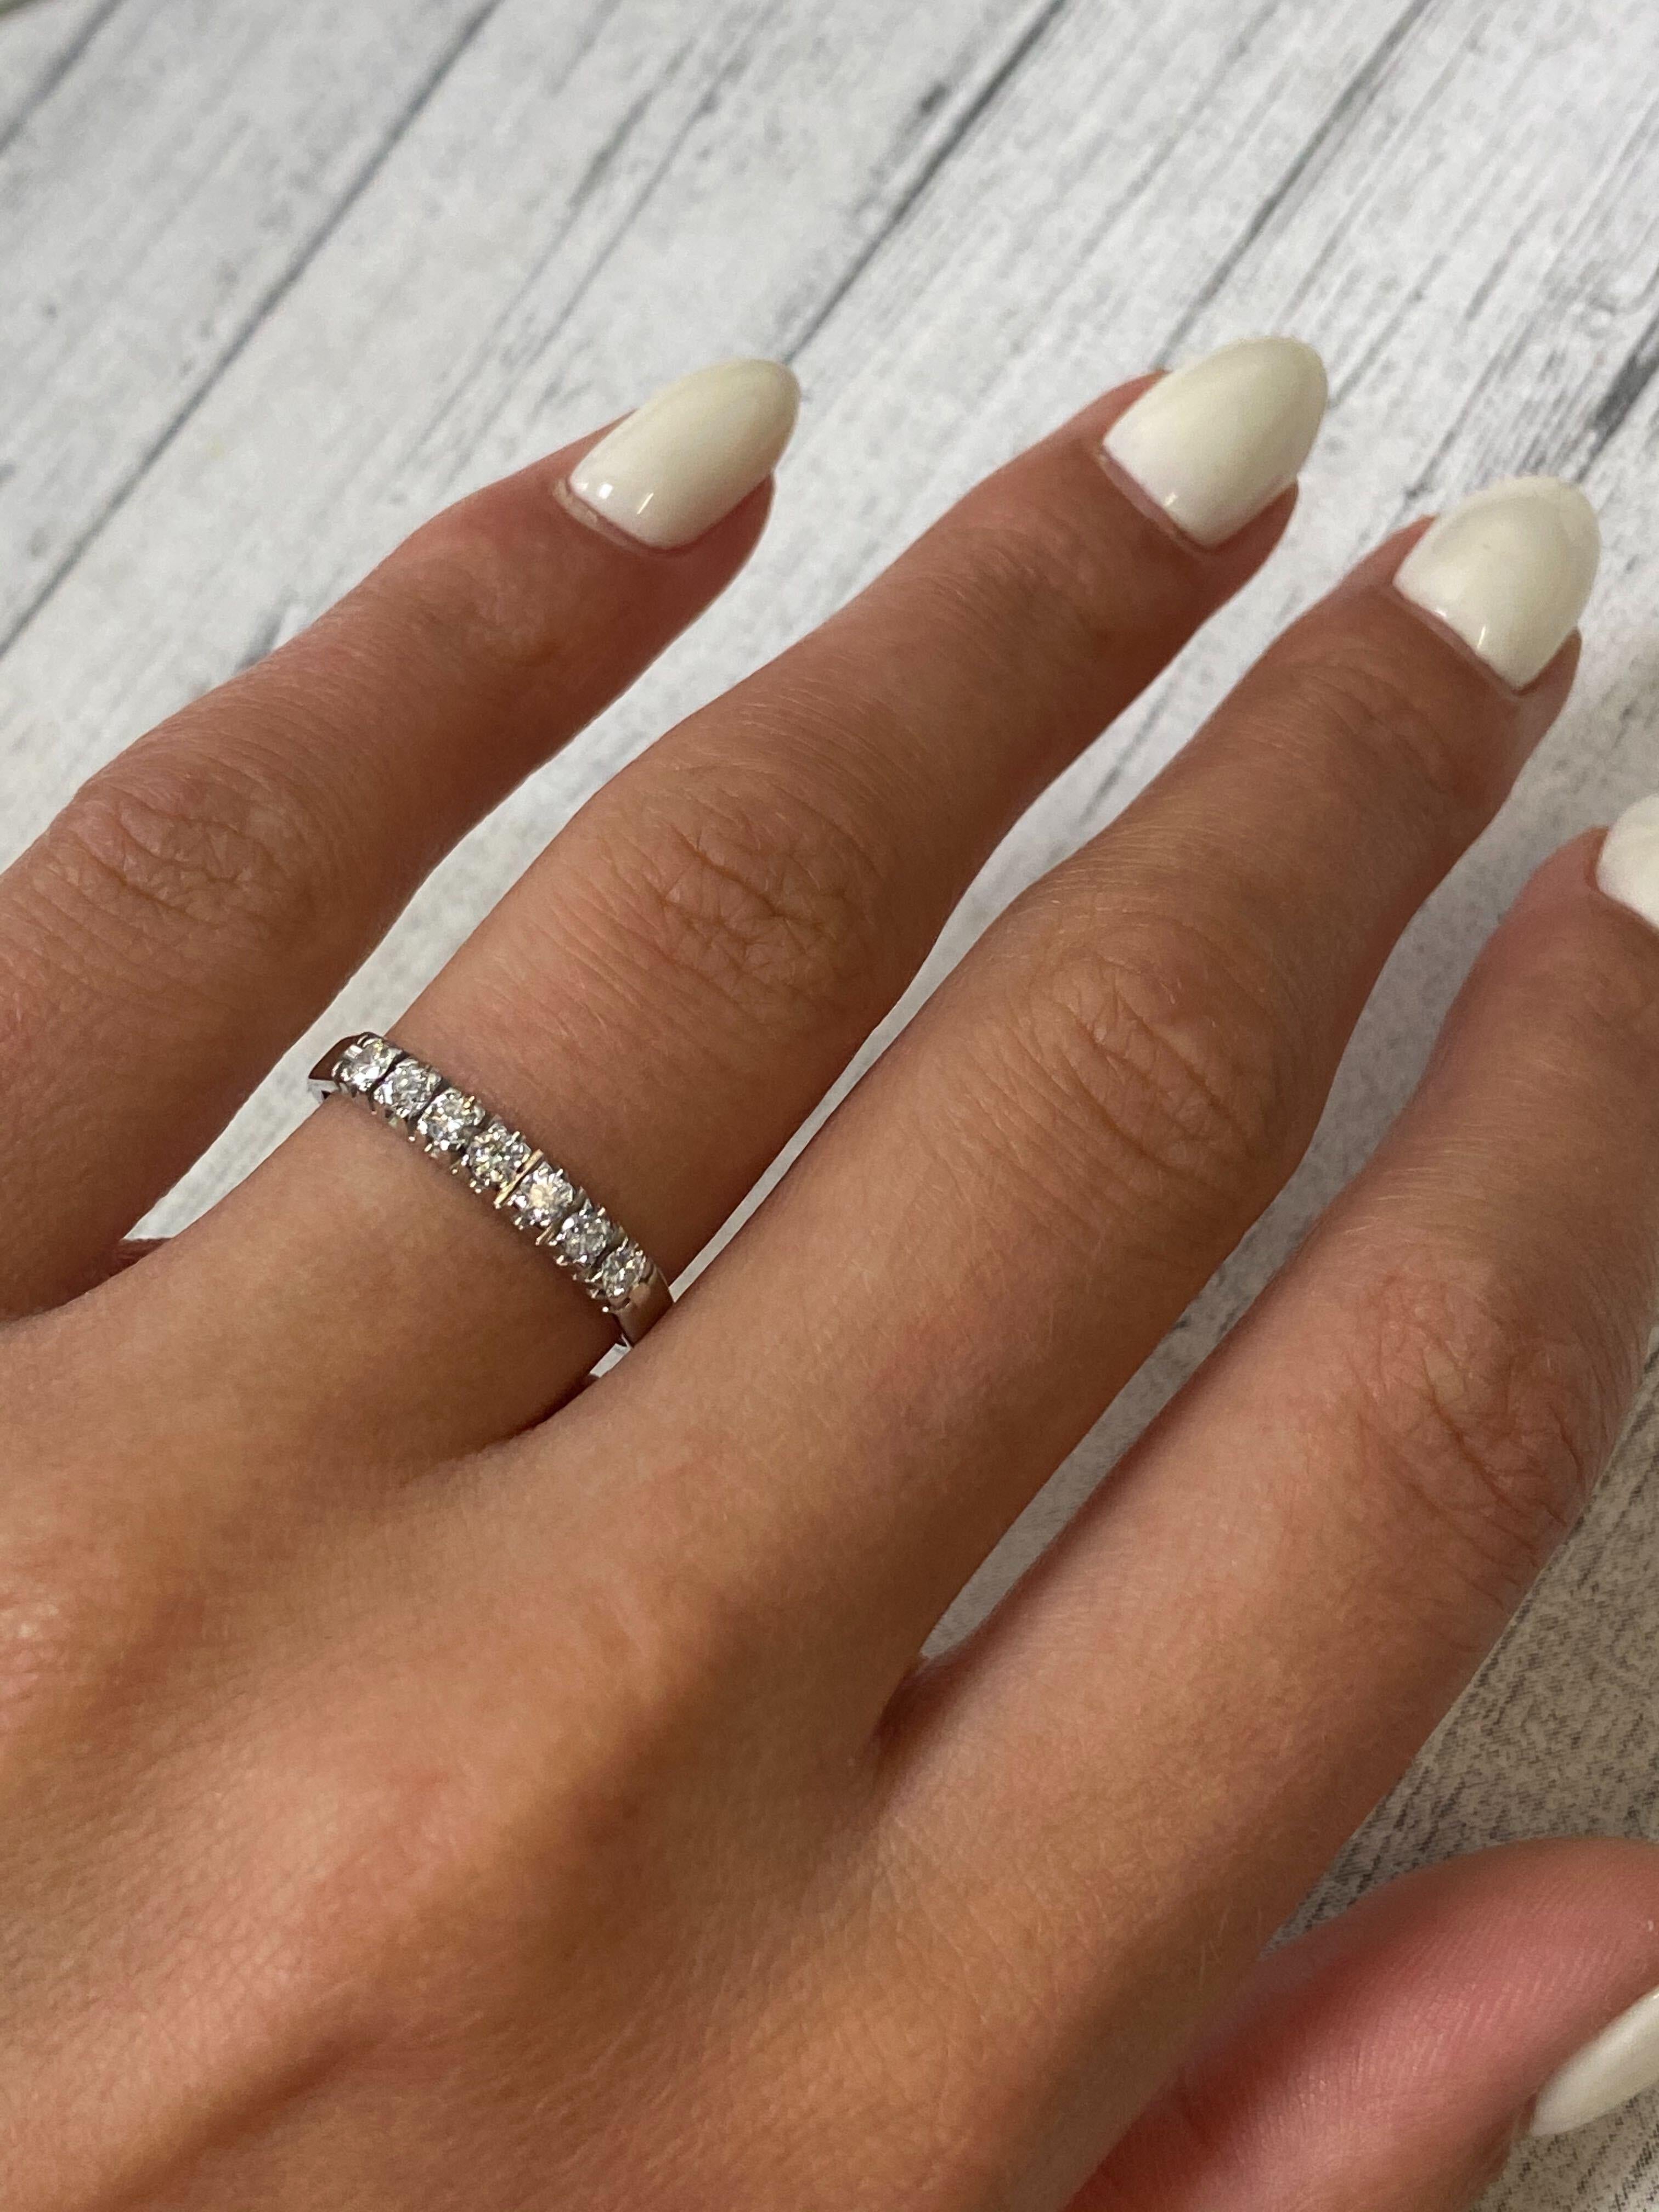 Women's Rachel Koen Pave Diamond Wedding Band Ring 14K White Gold 0.21Cttw For Sale